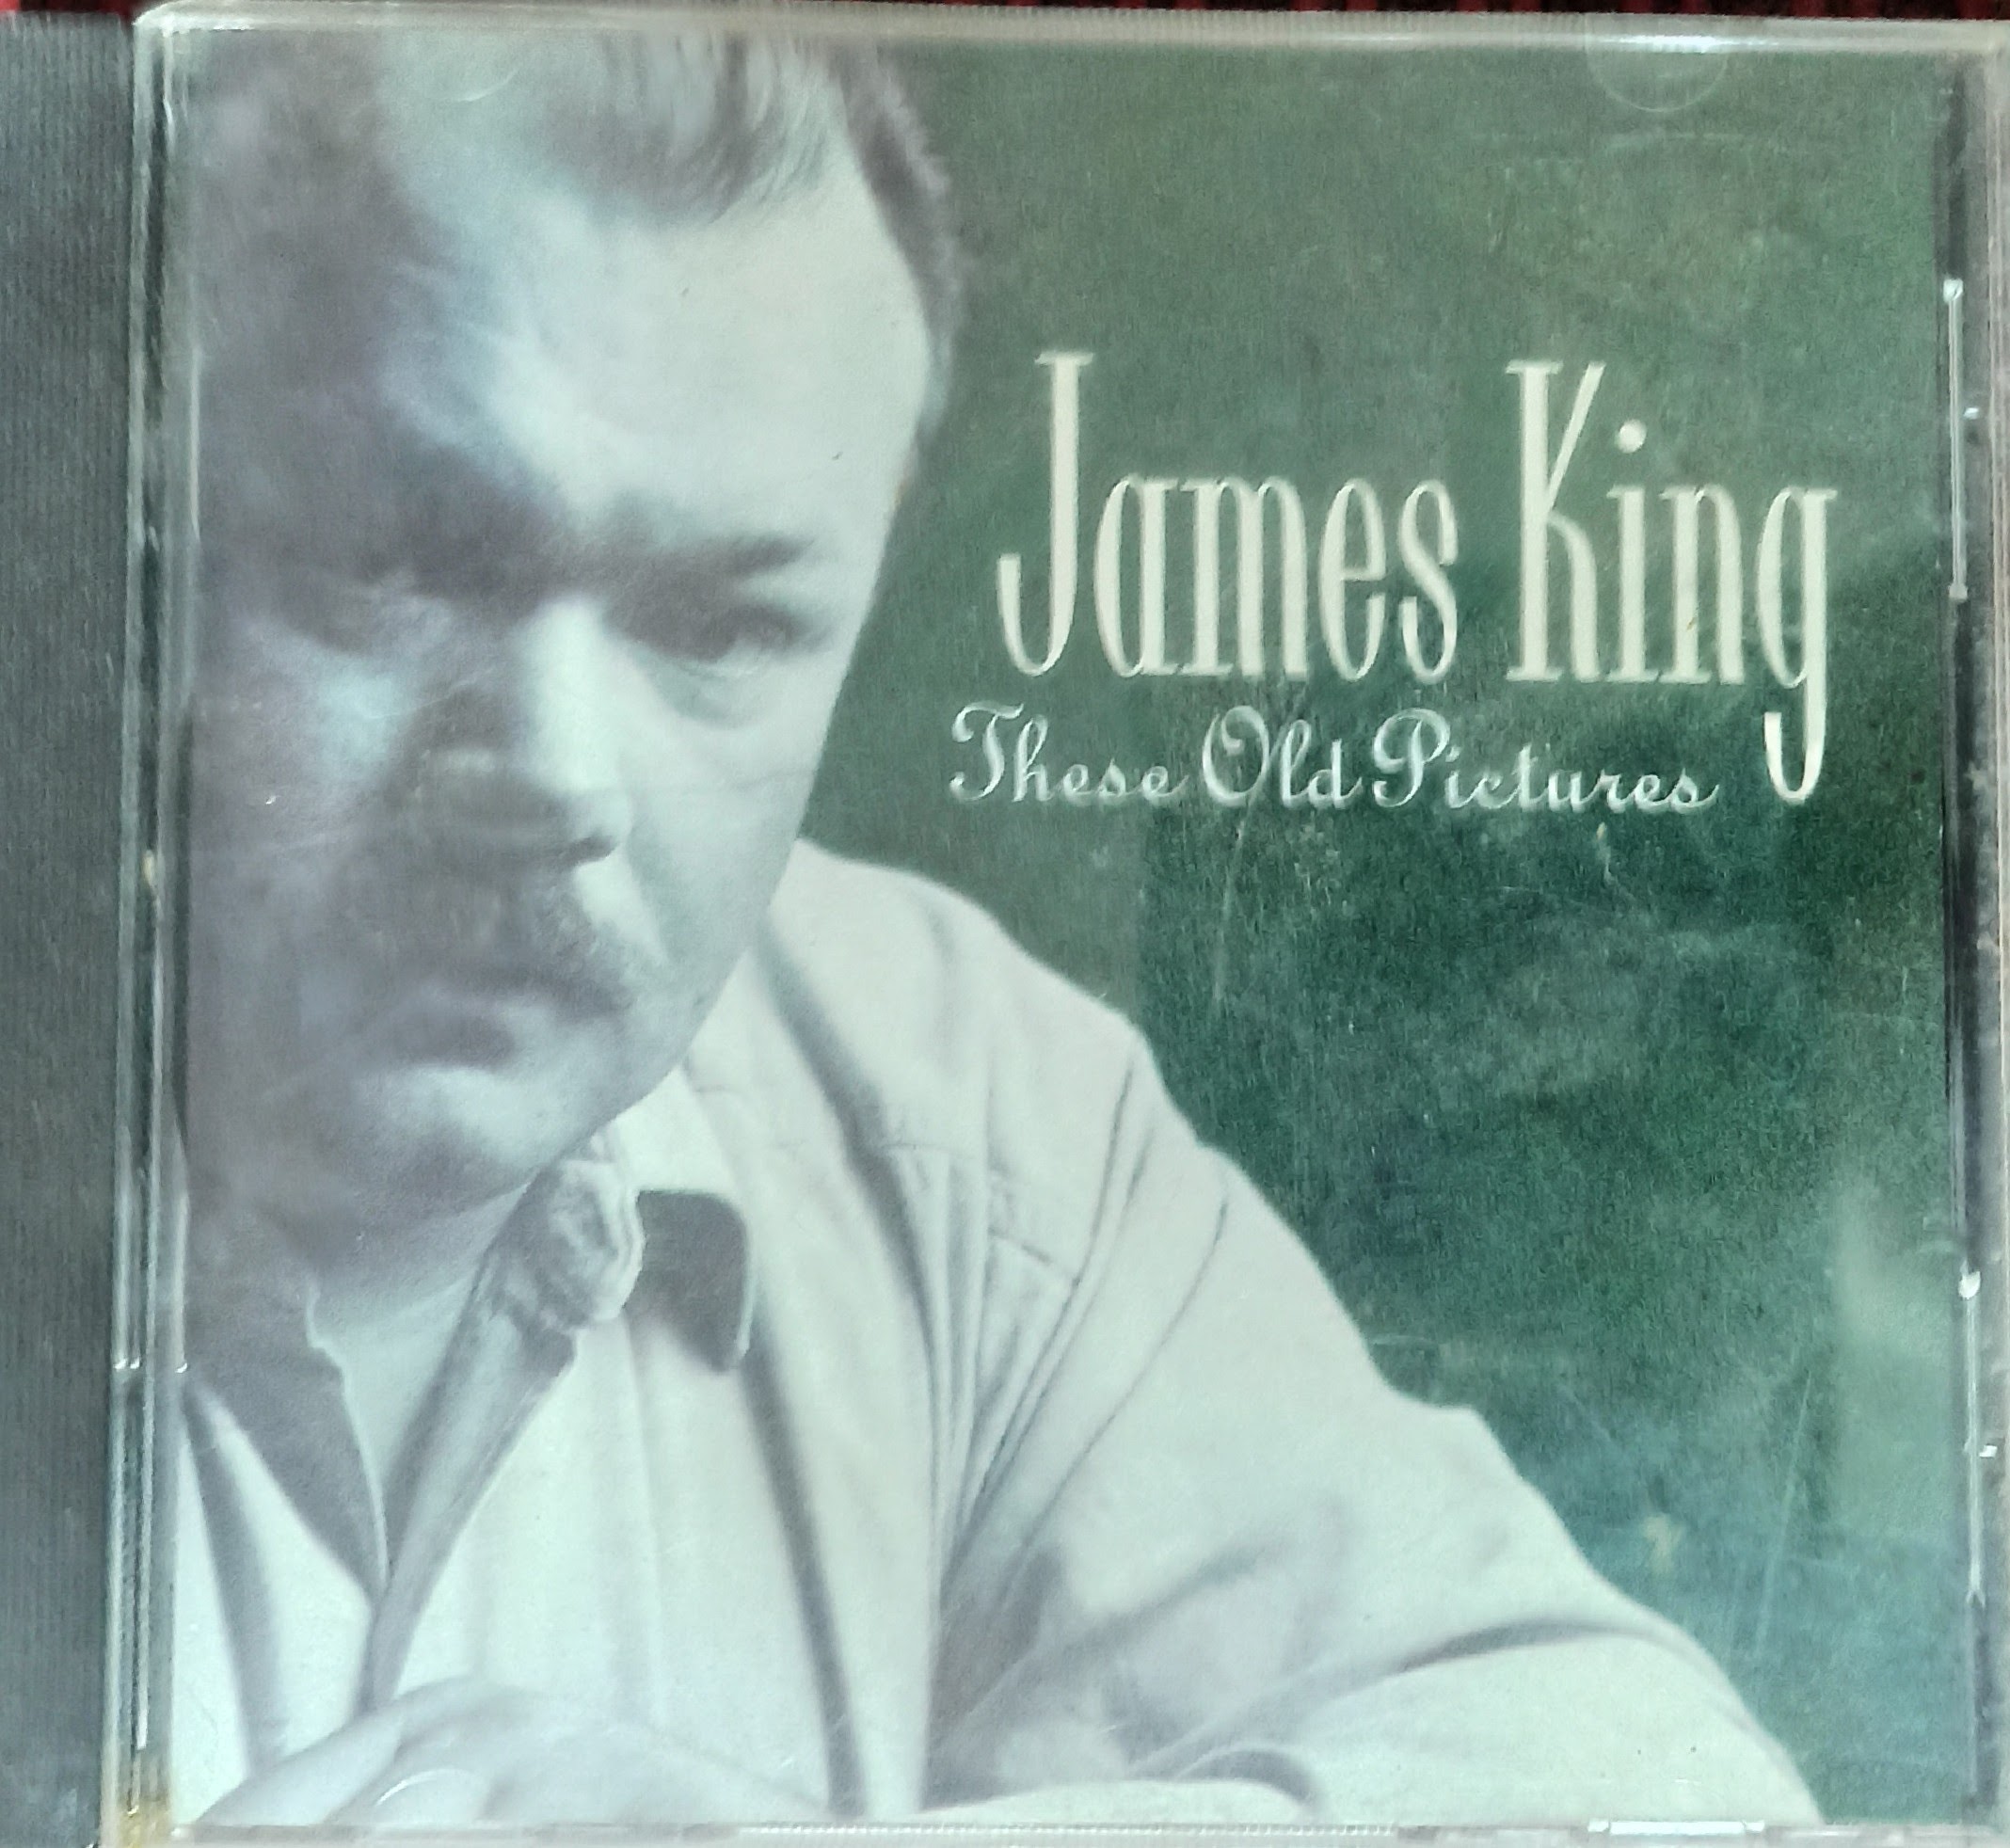 תמונה 1 ,דיסק של  Jamses king  למכירה ביבנה אספנות  תקליטים ודיסקים